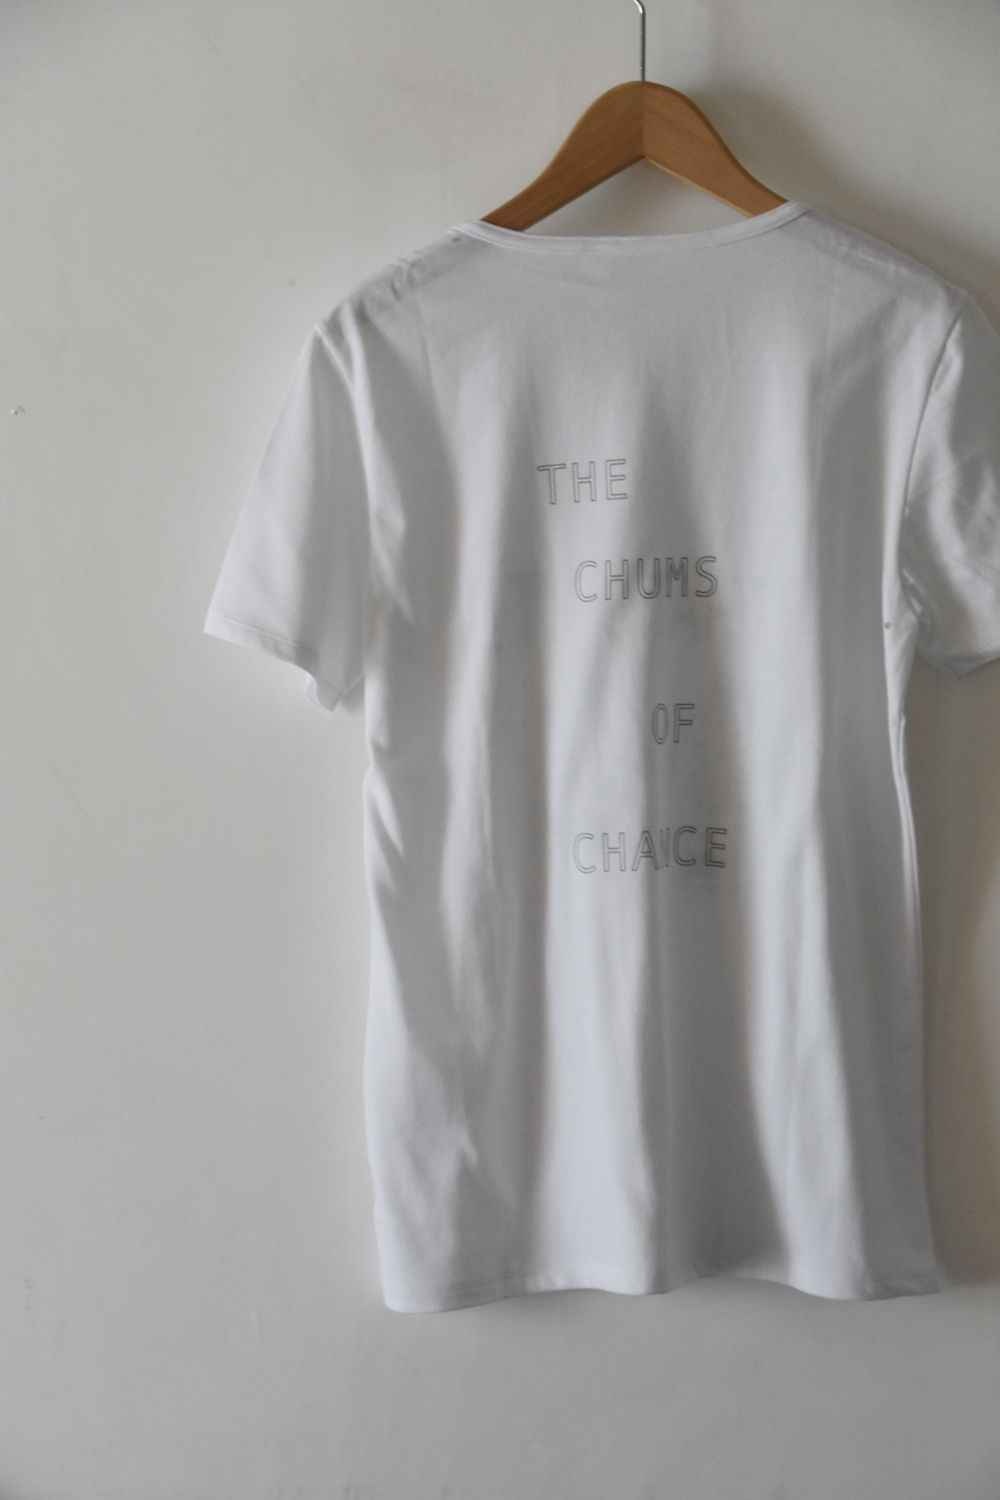 サインマグとDIGAWELのコラボ・ライン、<br />
THE CHUMS OF CHANCEの別注Tシャツ<br />
発売開始！音源ダウンロード・コード付き！